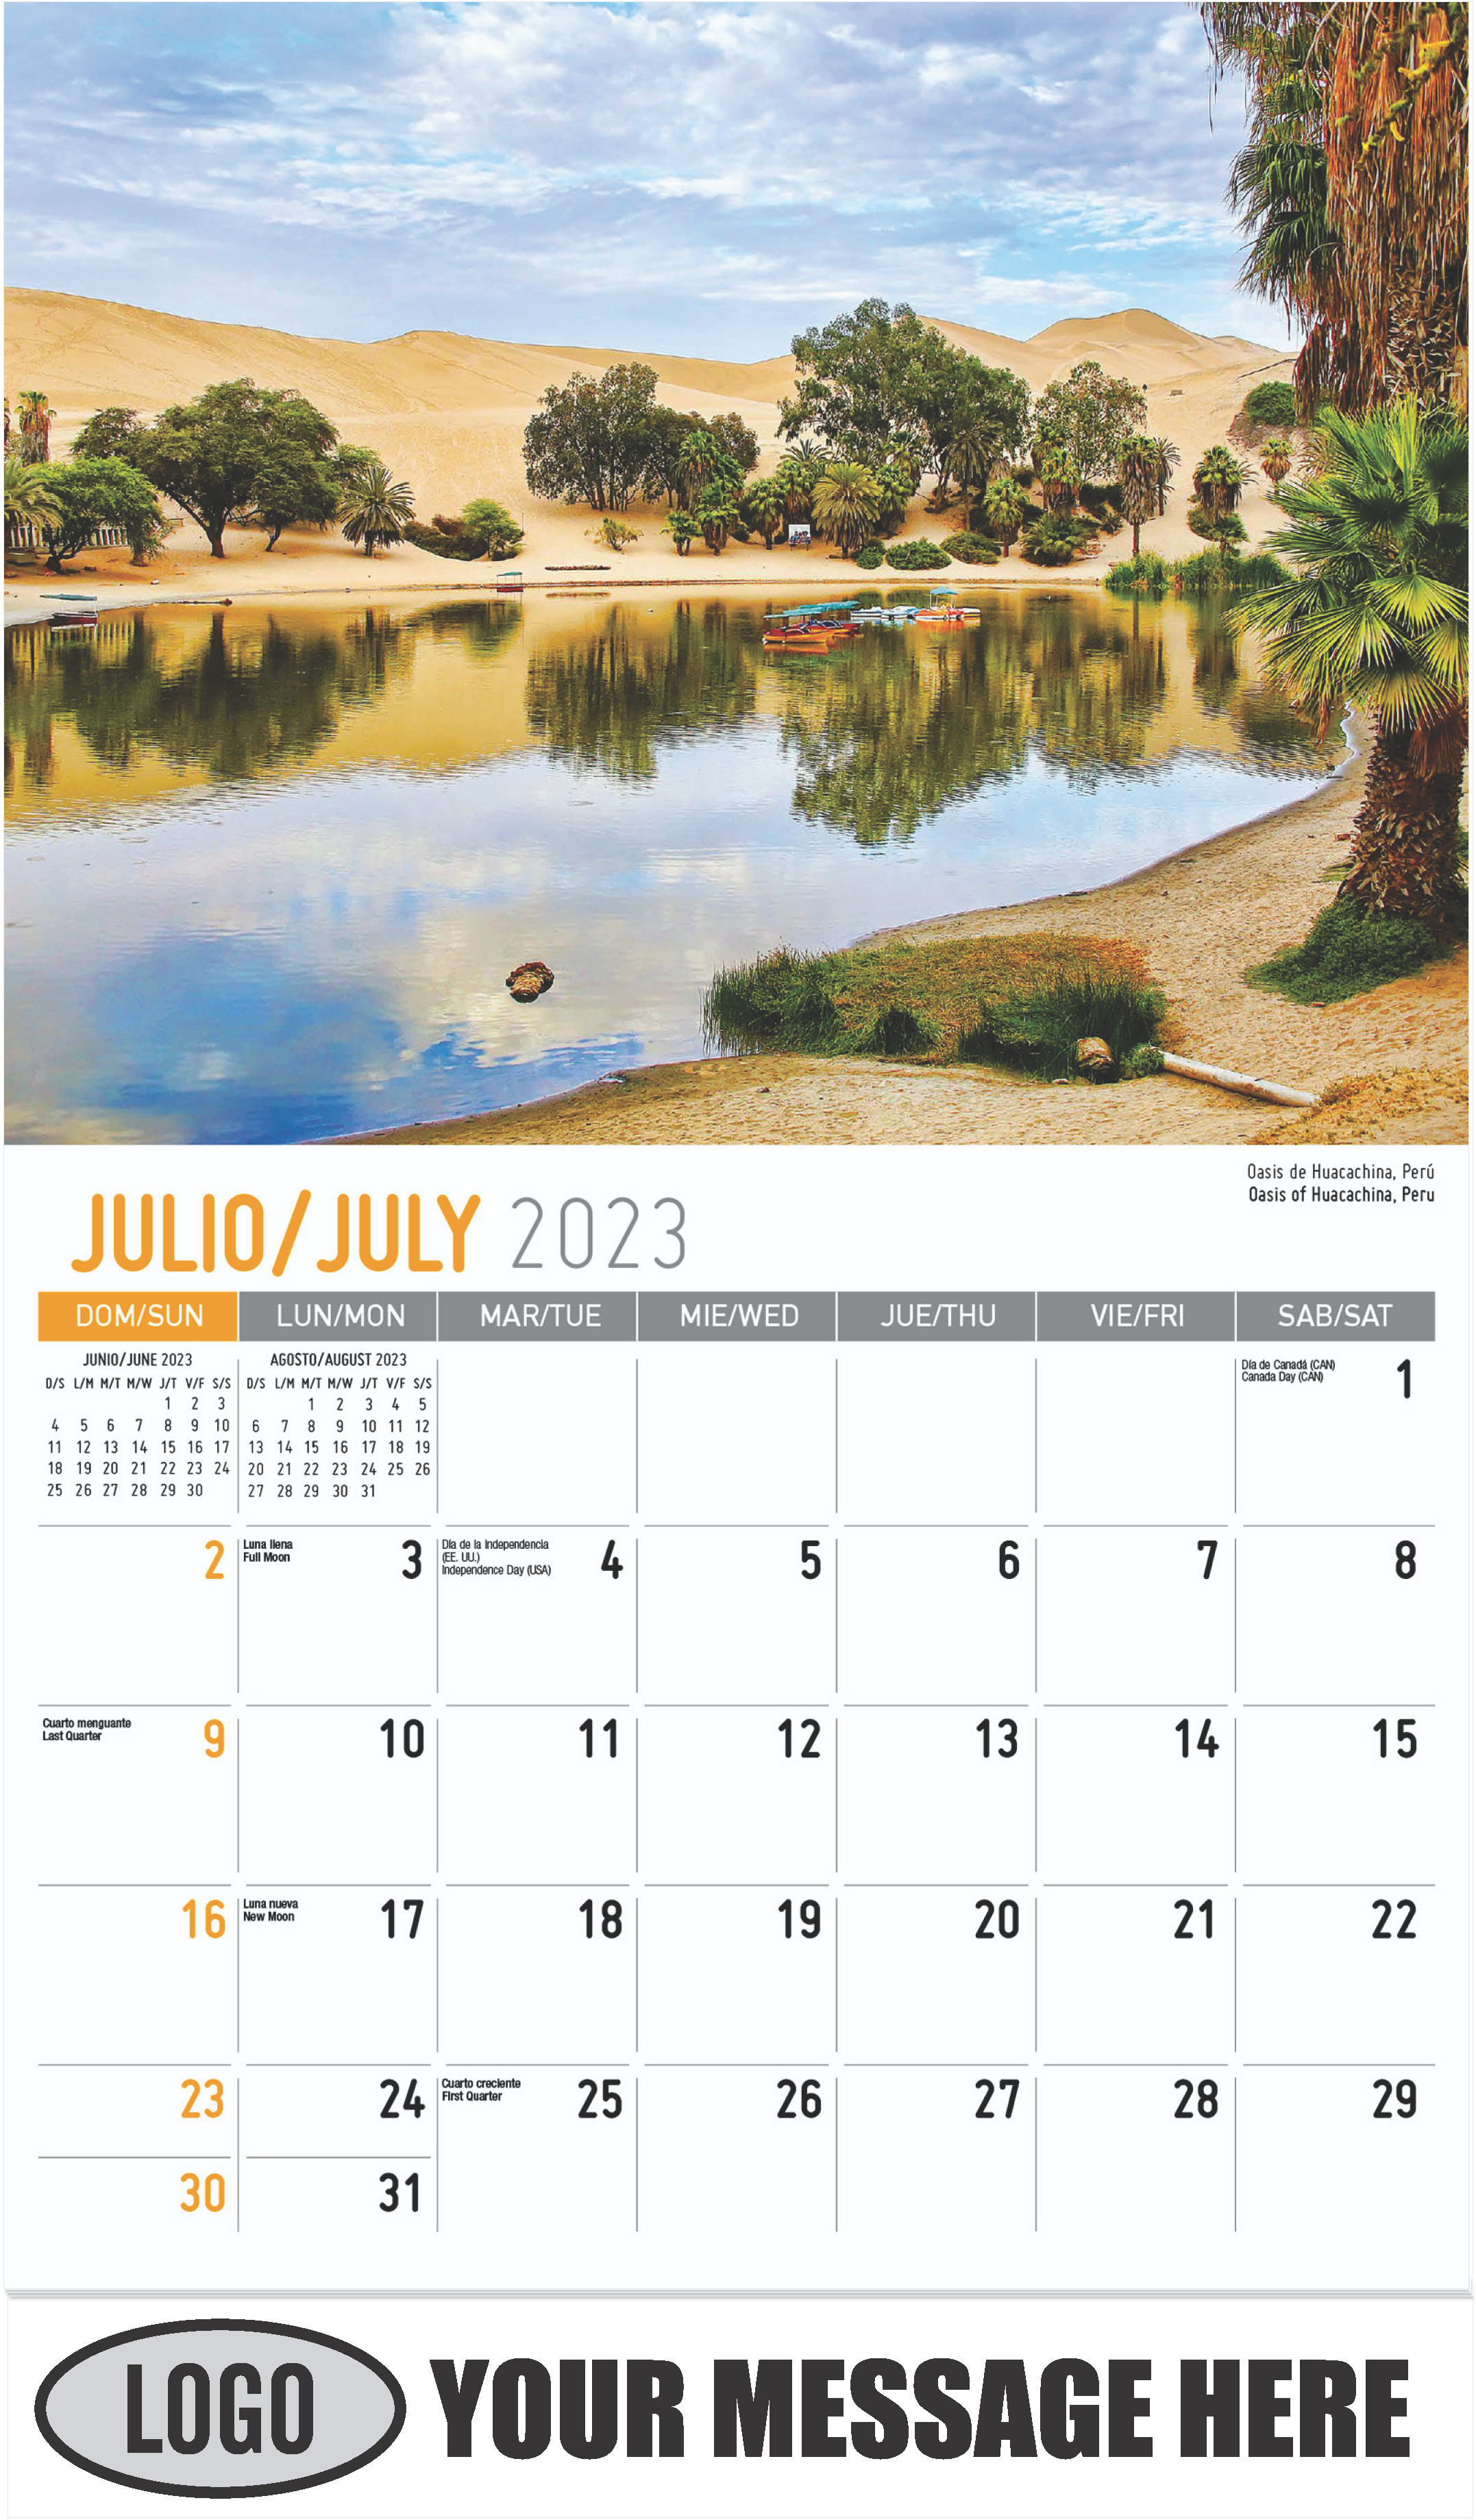 Oasis of Huacachina, Peru - July - Beauty of Latin America 2023 Promotional Calendar